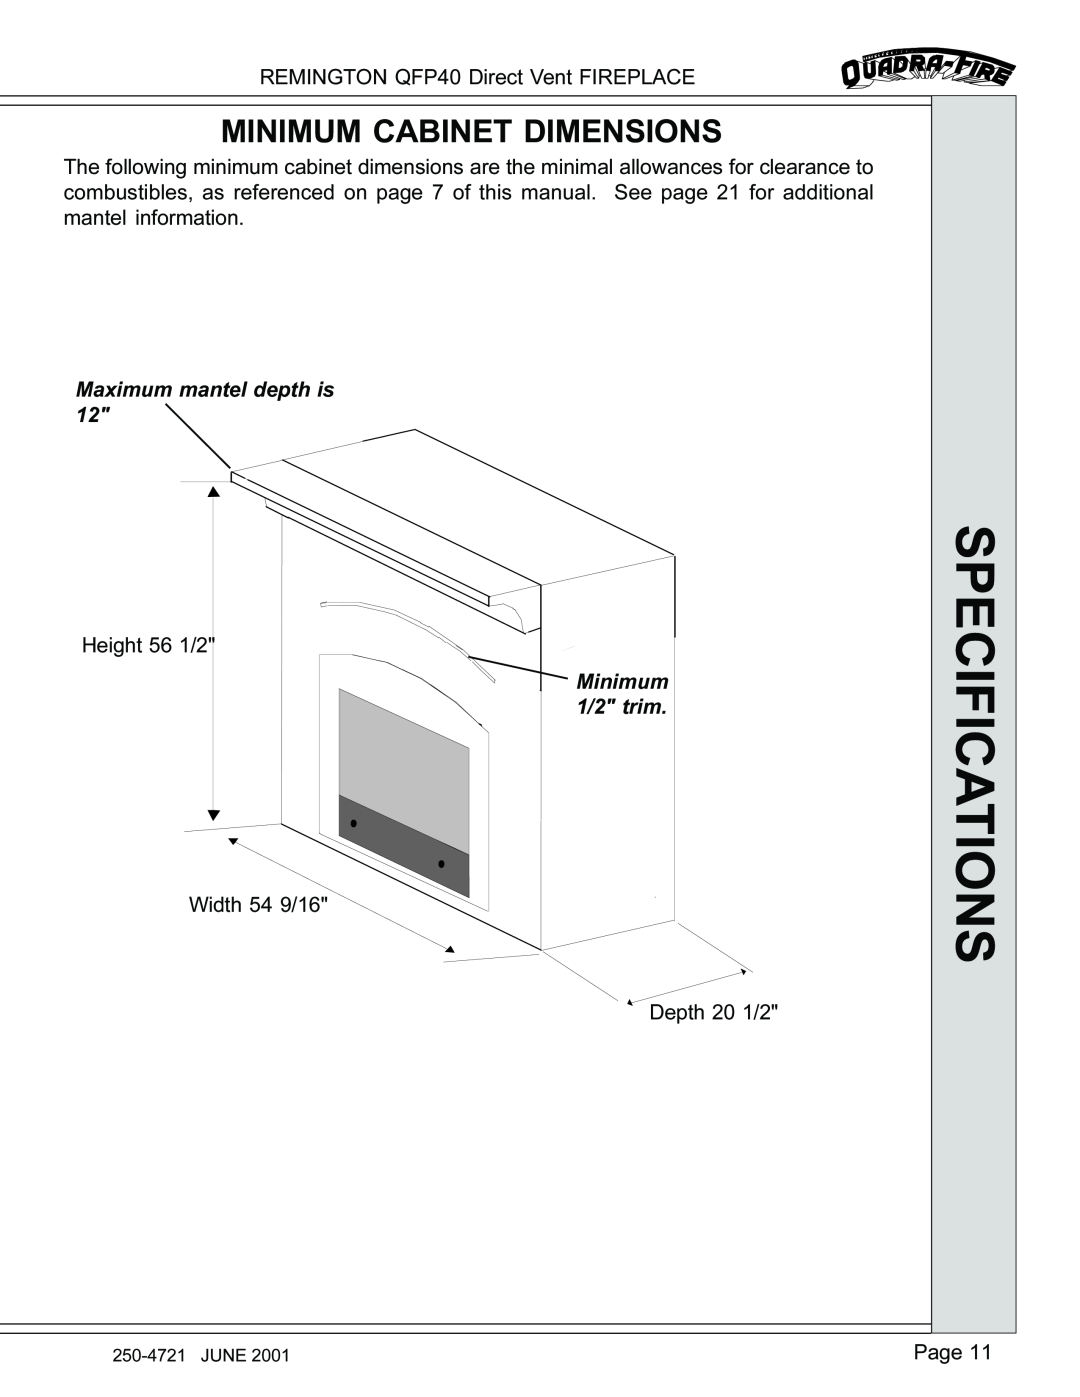 Remington manual Minimum Cabinet Dimensions, Specifications, REMINGTON QFP40 Direct Vent FIREPLACE, Page 